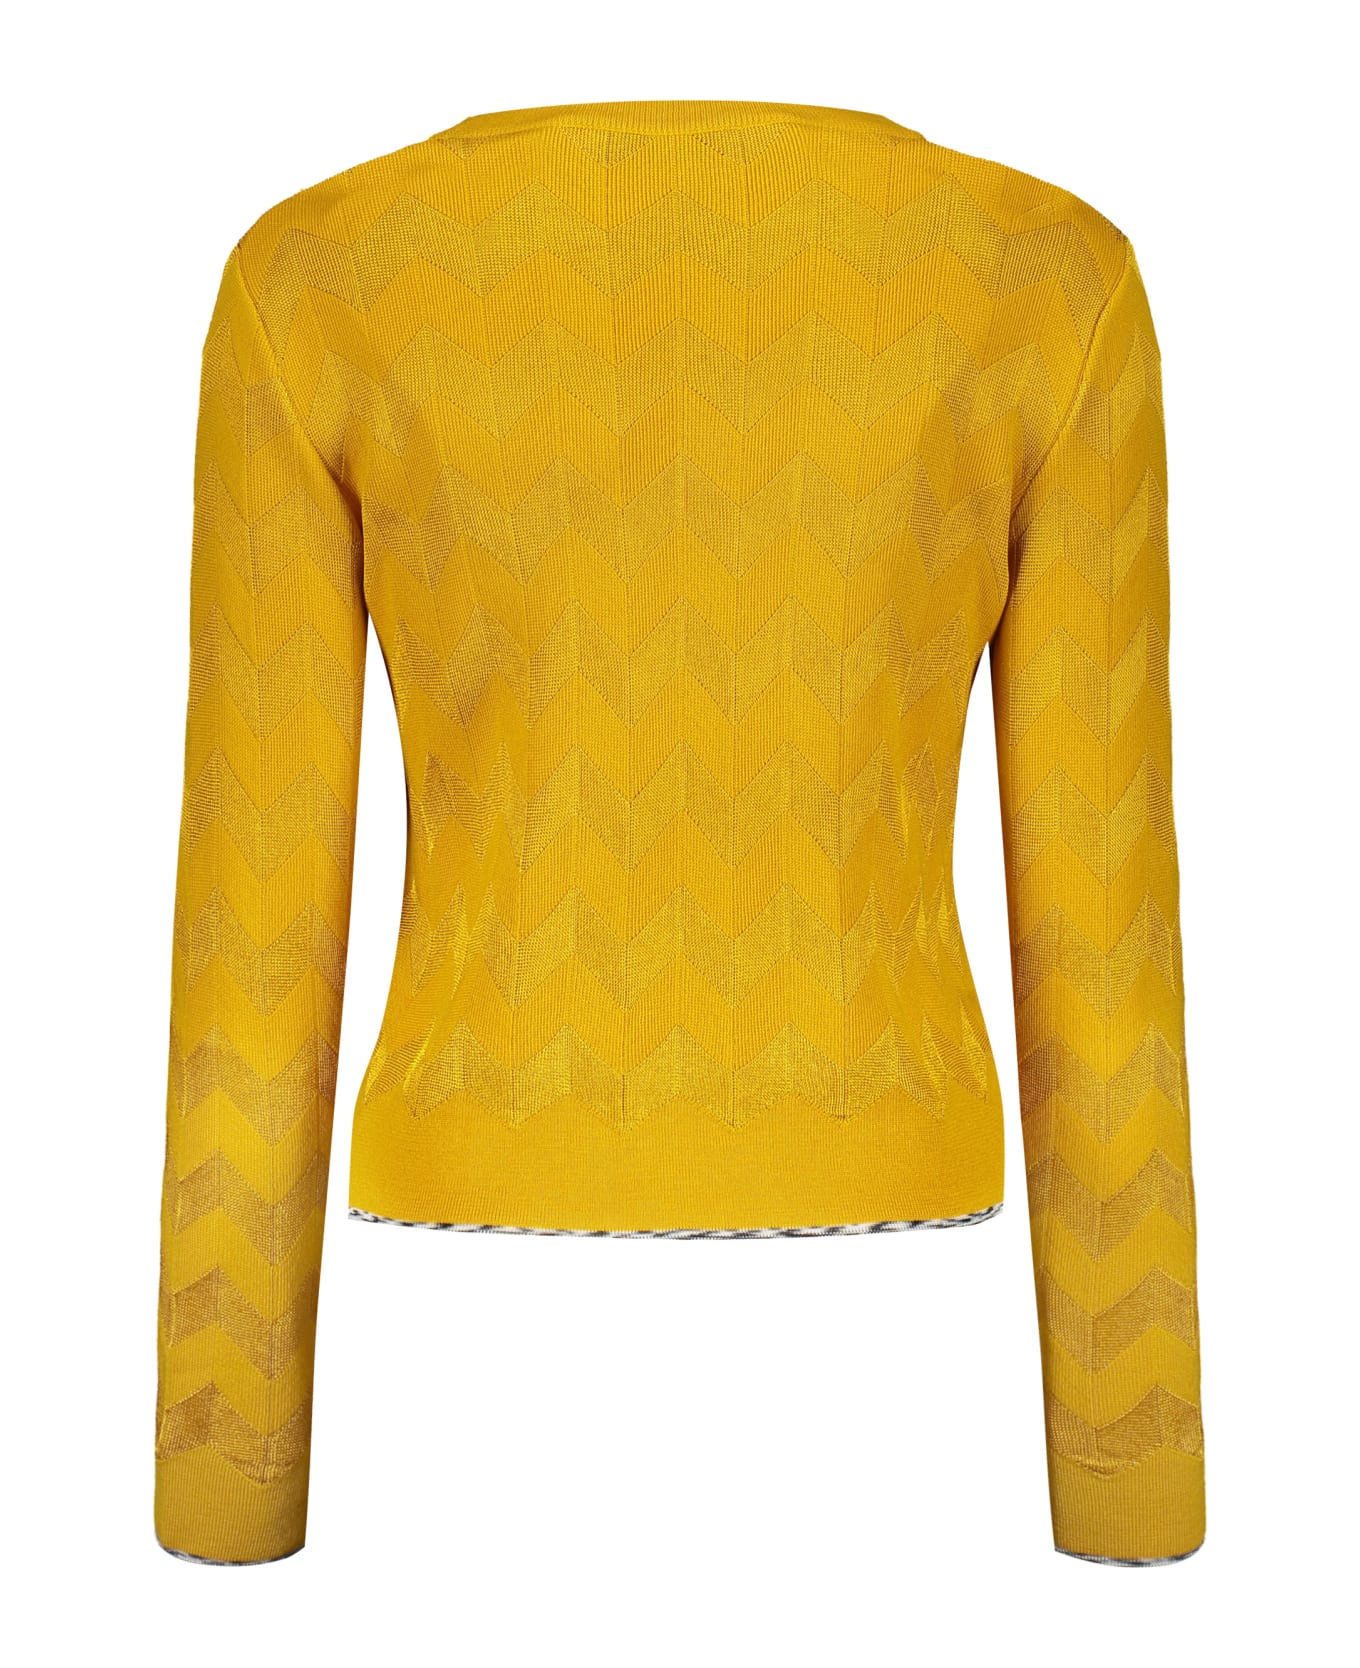 Missoni Wool Blend Sweater - Mustard